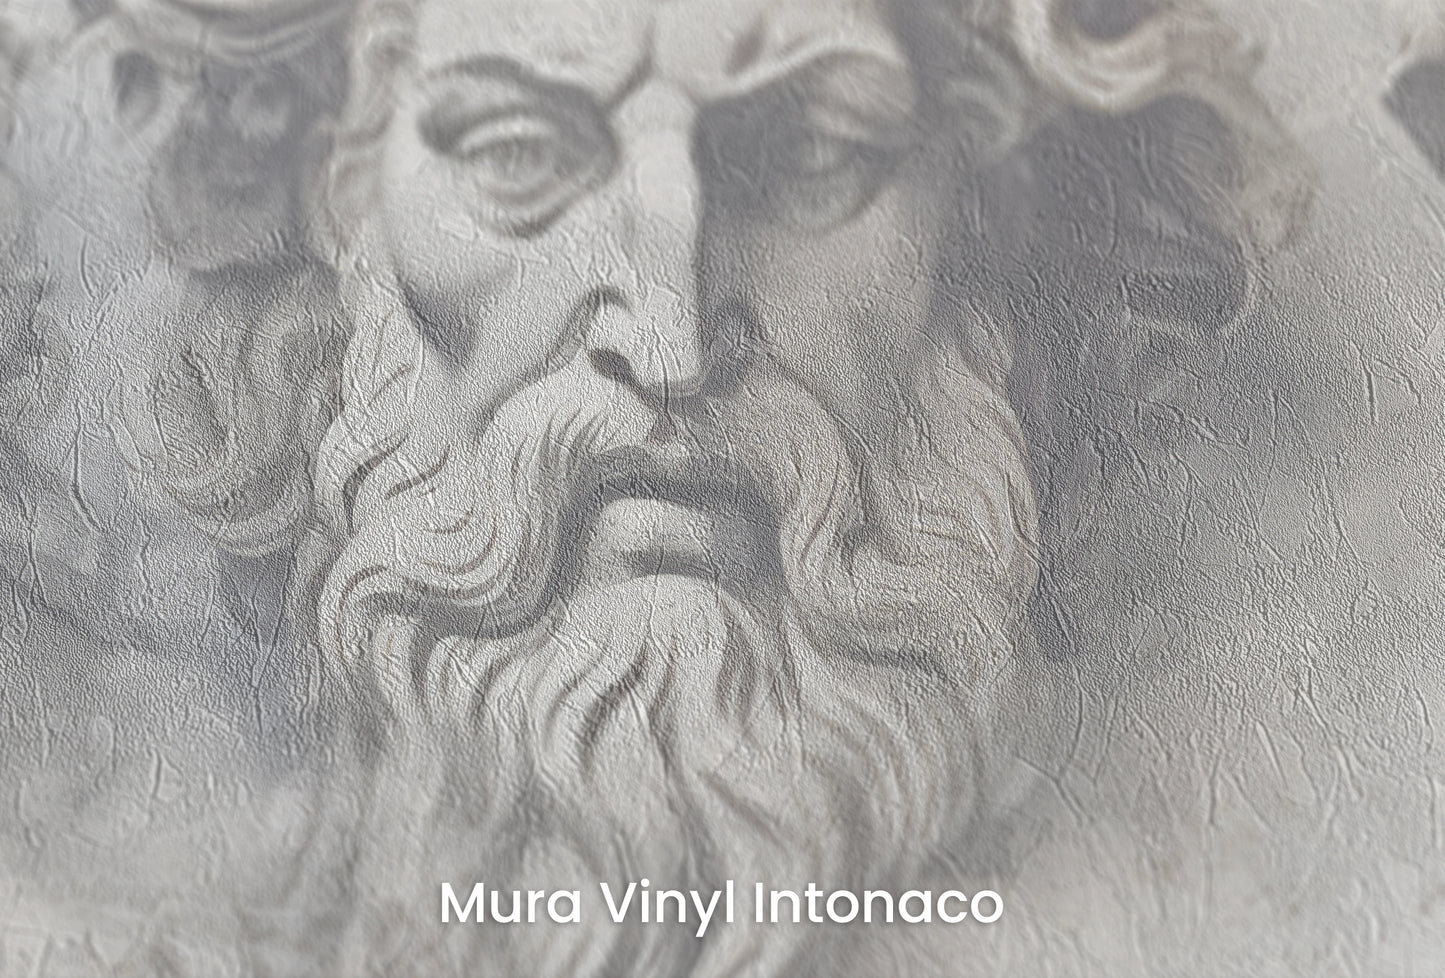 Zbliżenie na artystyczną fototapetę o nazwie Sages of Antiquity na podłożu Mura Vinyl Intonaco - struktura tartego tynku.